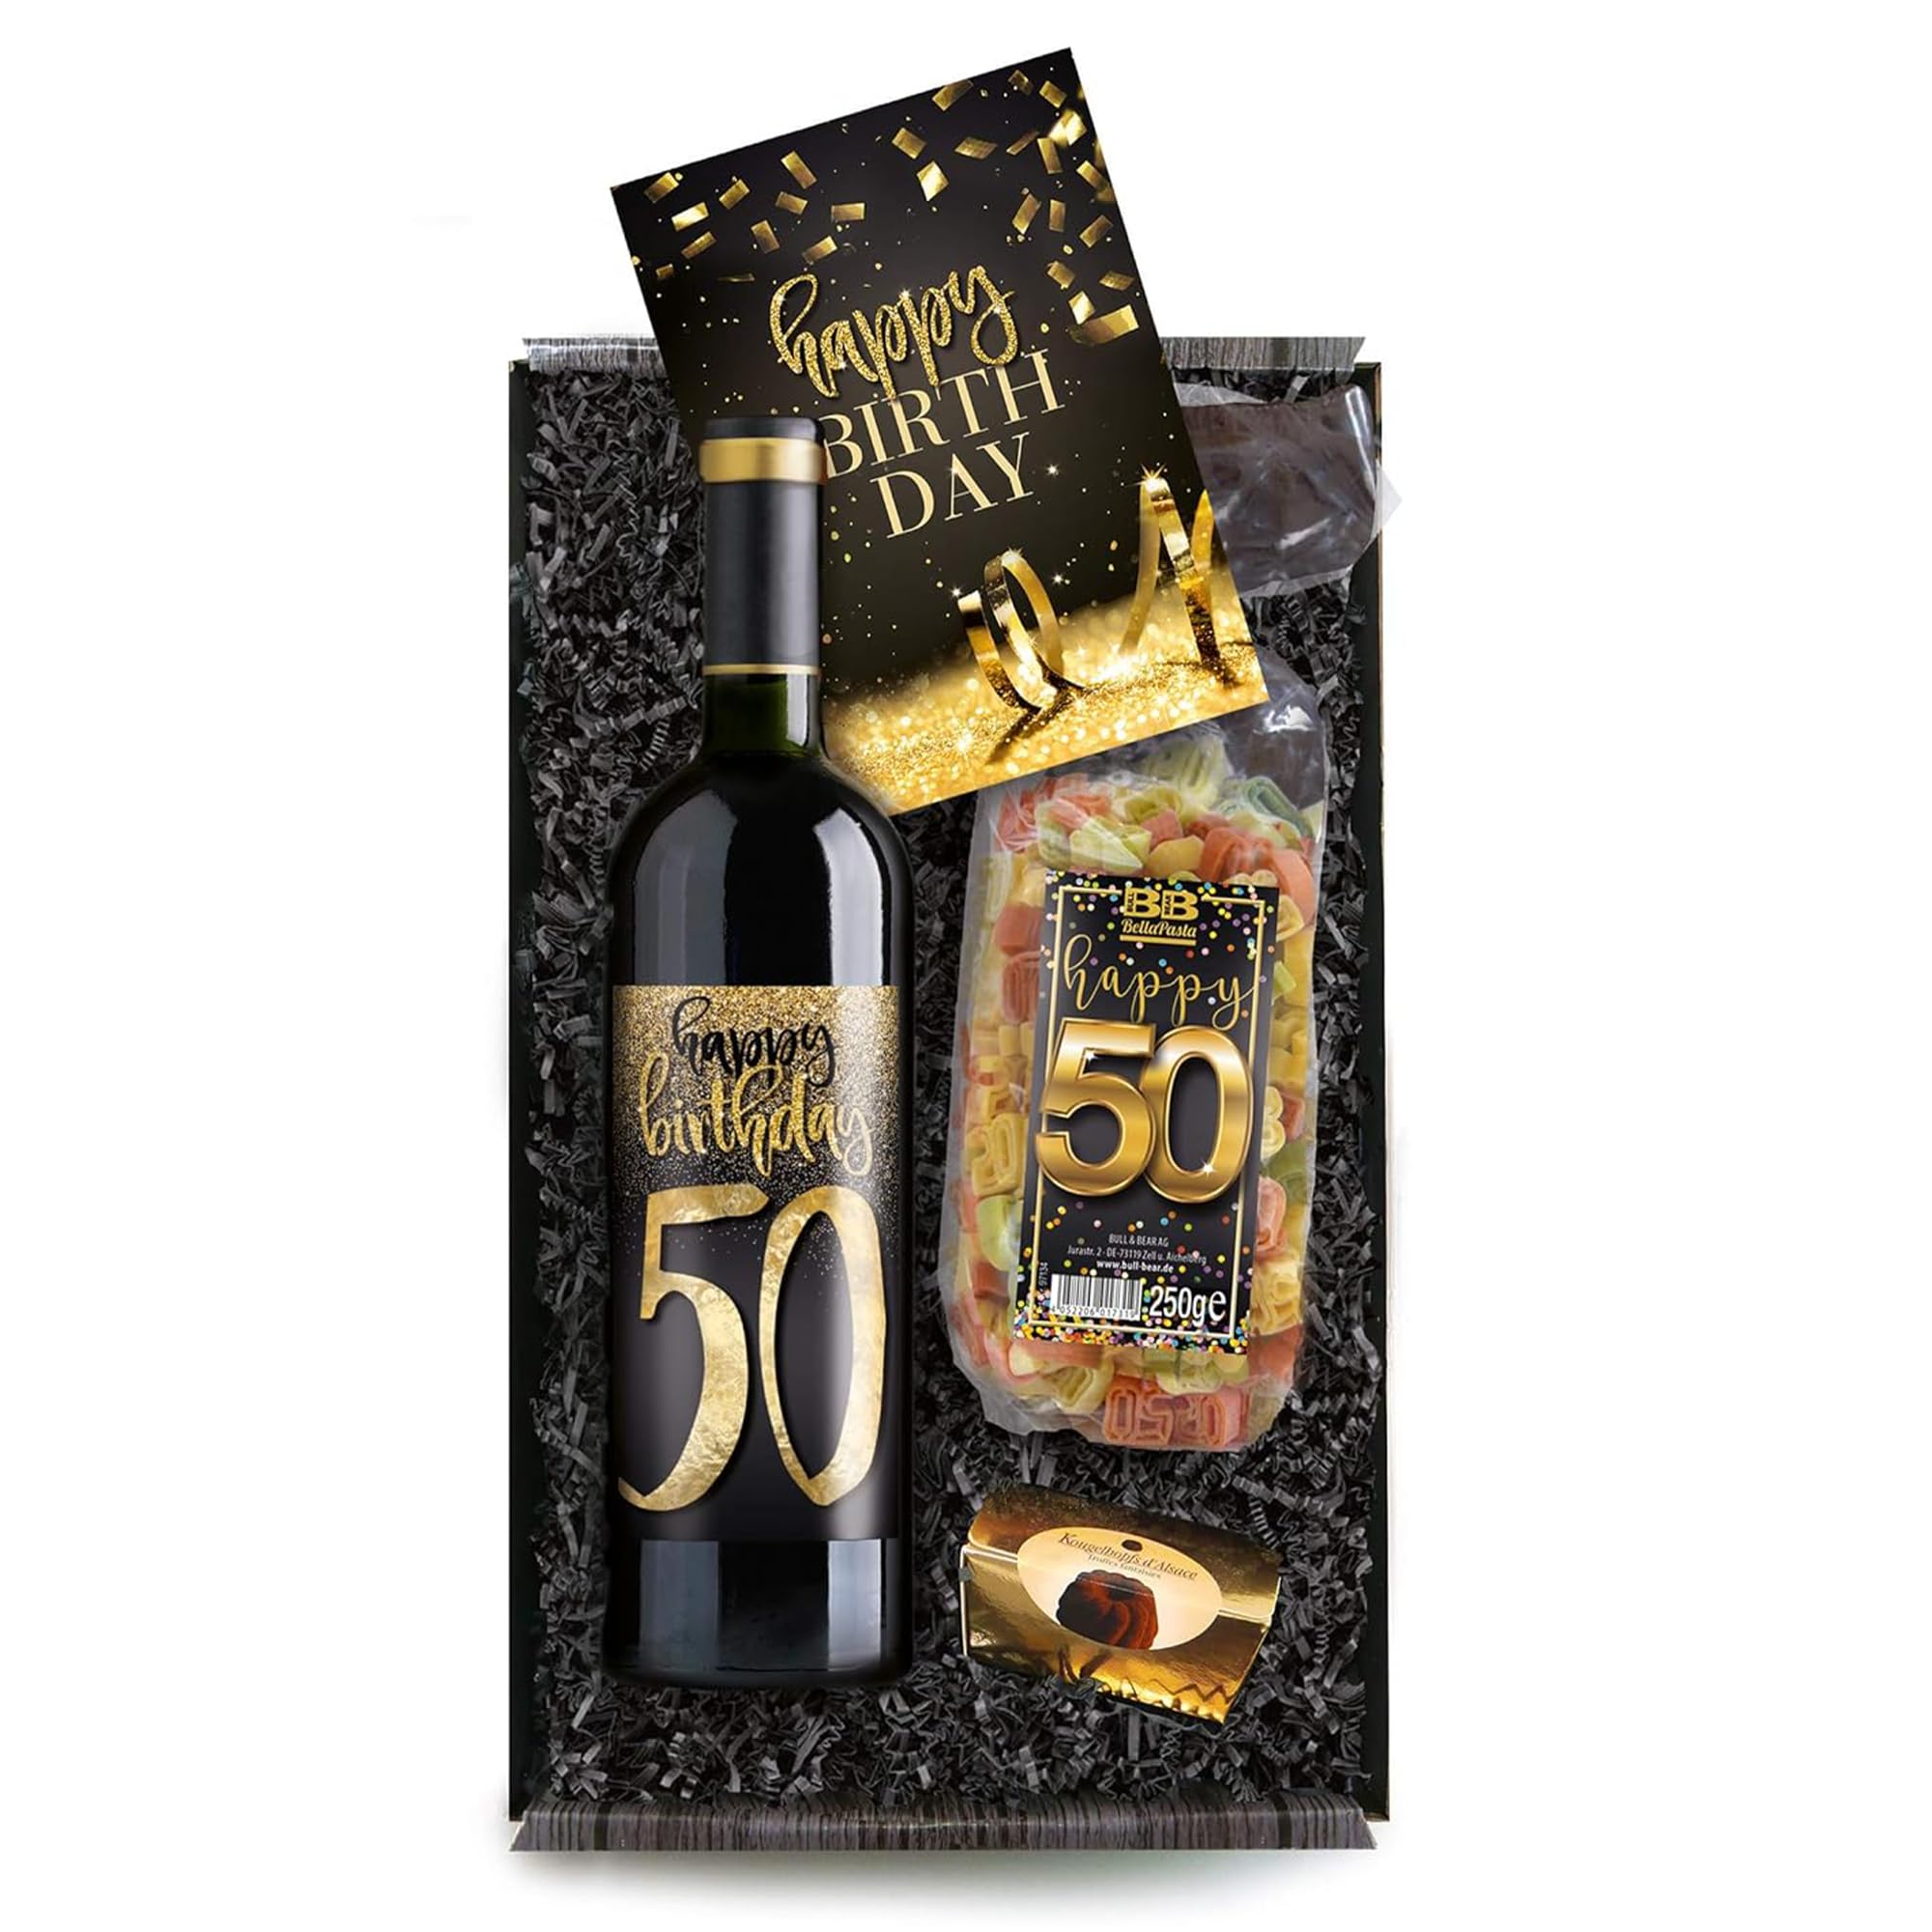 Bull & Bear Geschenkbox "Happy Birthday 50", Set mit Rotwein, Nudeln und Geburtstagskarte, Geschenk zum 50. Geburtstag